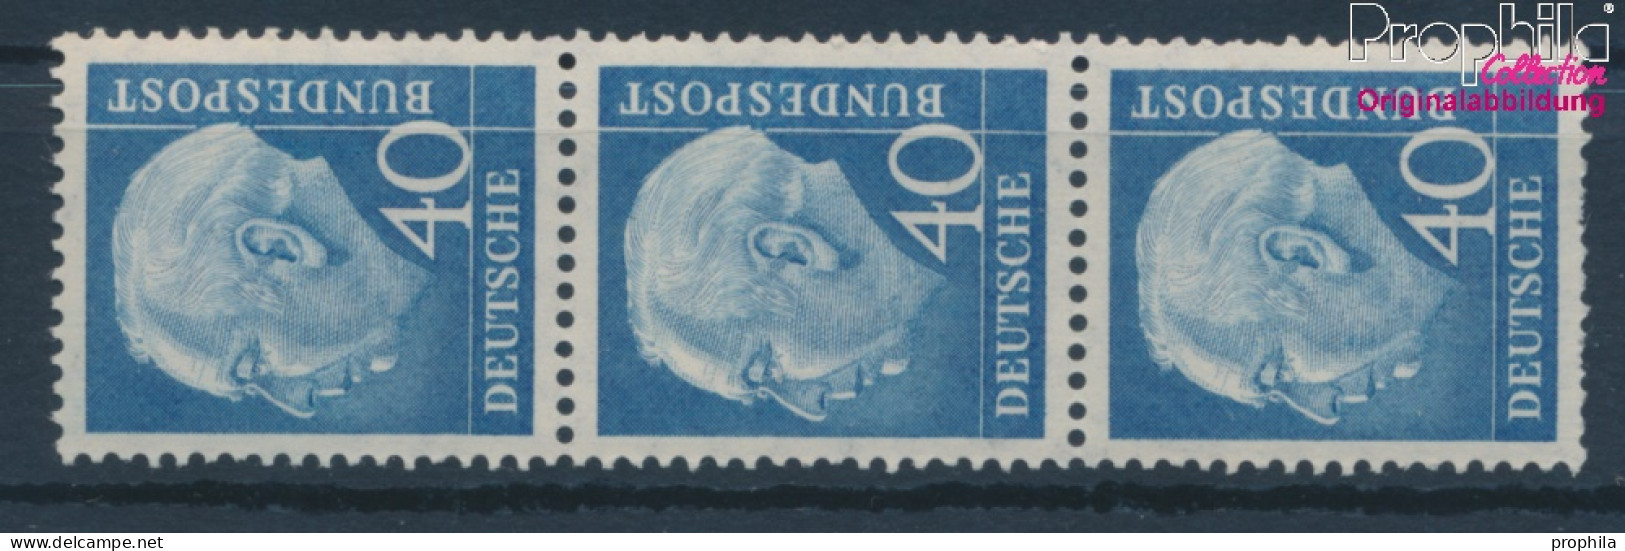 BRD 260x V R Mit Zählnummer Geriffelte Gummierung Postfrisch 1956 Heuss (10343204 - Unused Stamps